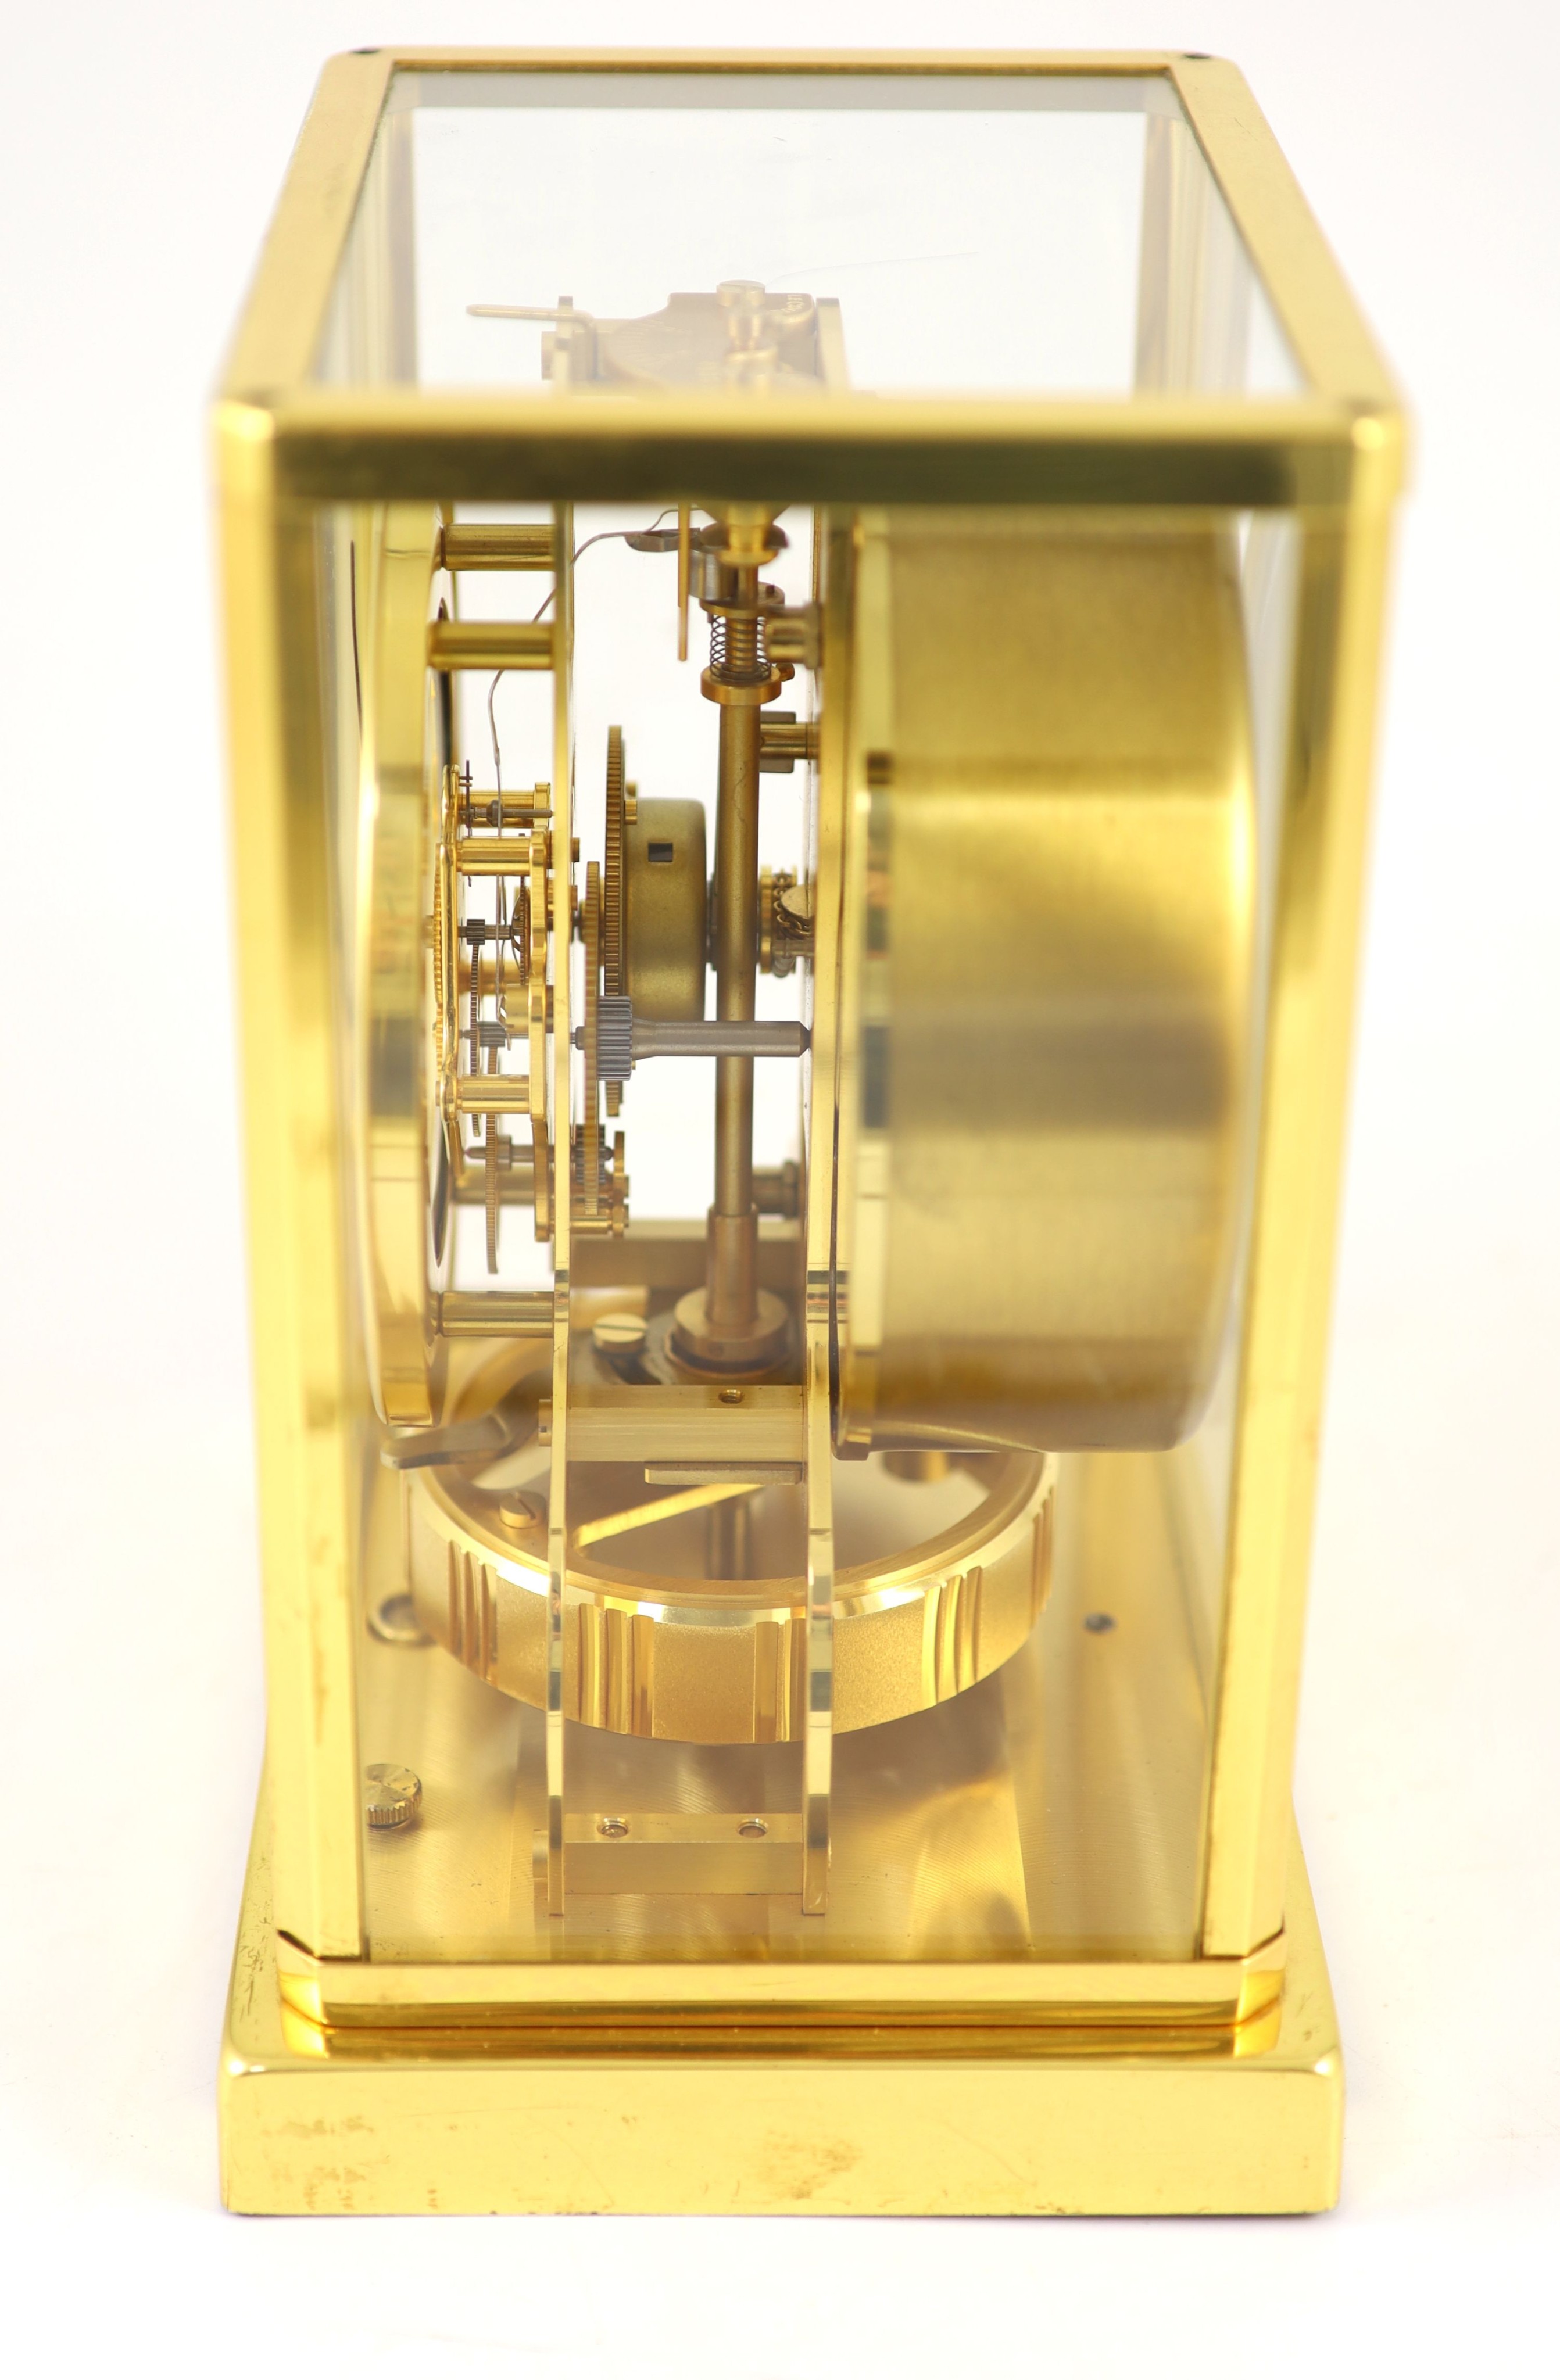 A Jaeger le Coultre gilt metal Atmos clock, width 18cm depth 13.5cm height 22cm